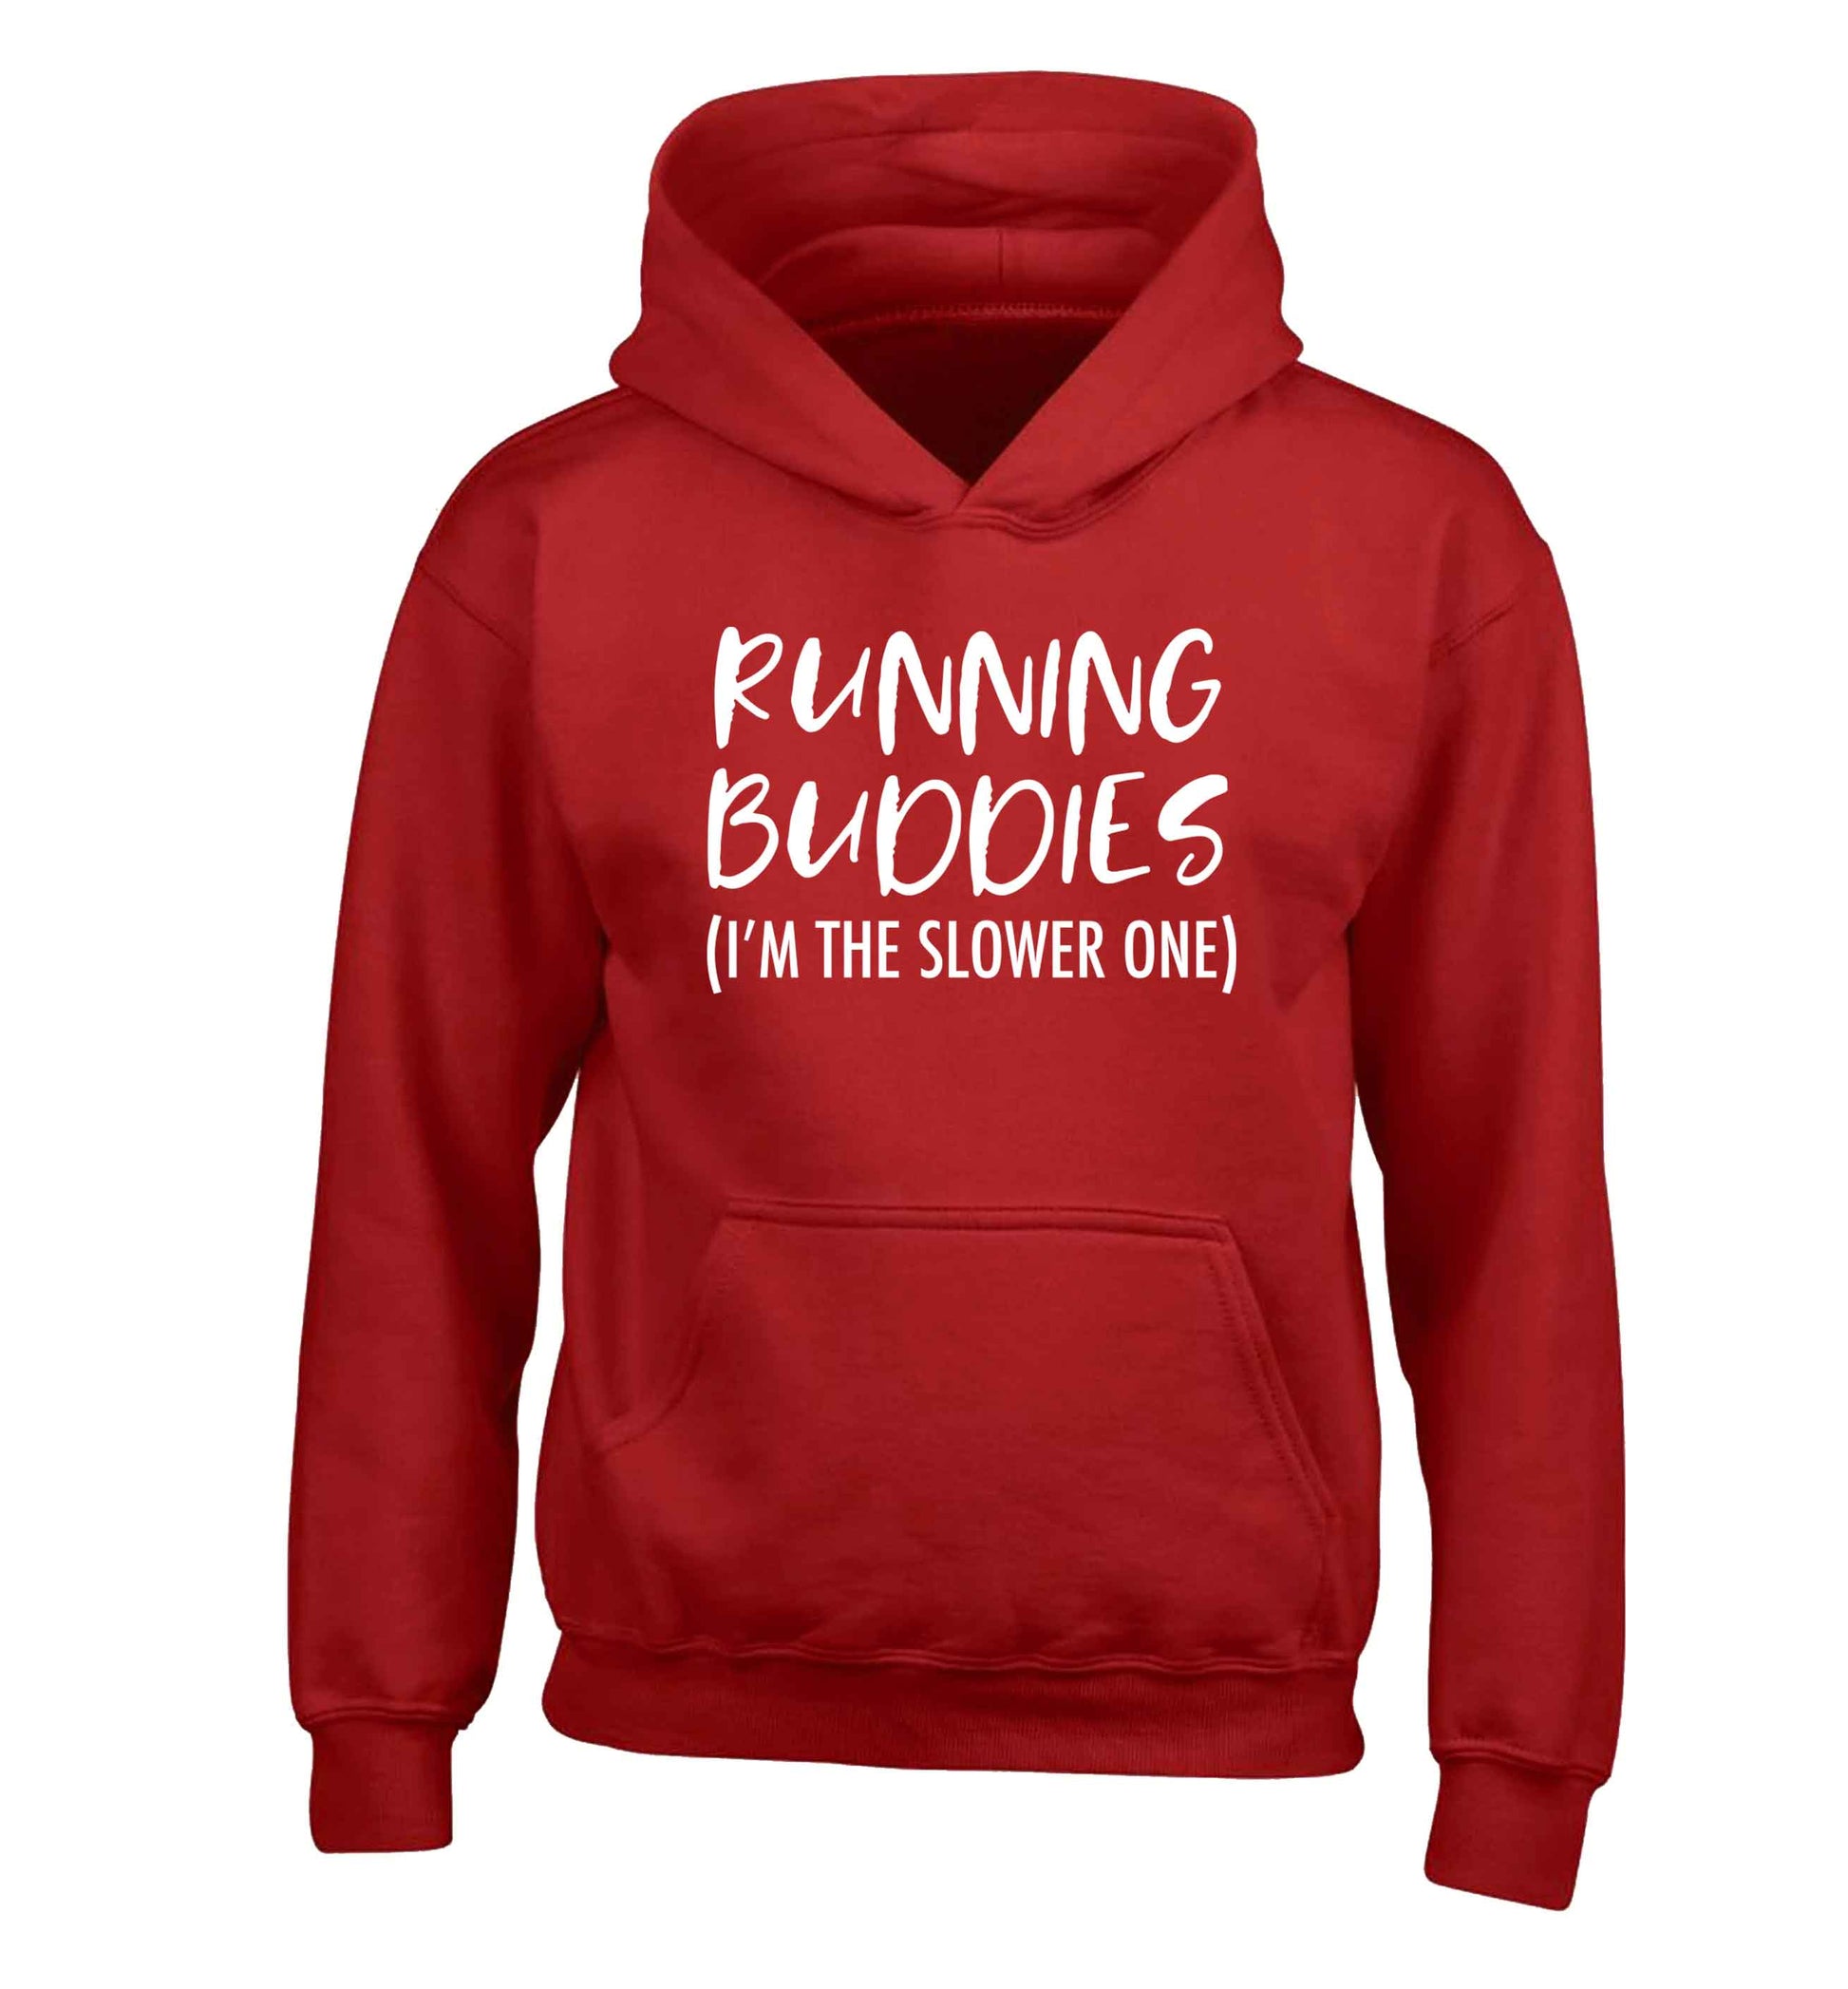 Running buddies (I'm the slower one) children's red hoodie 12-13 Years